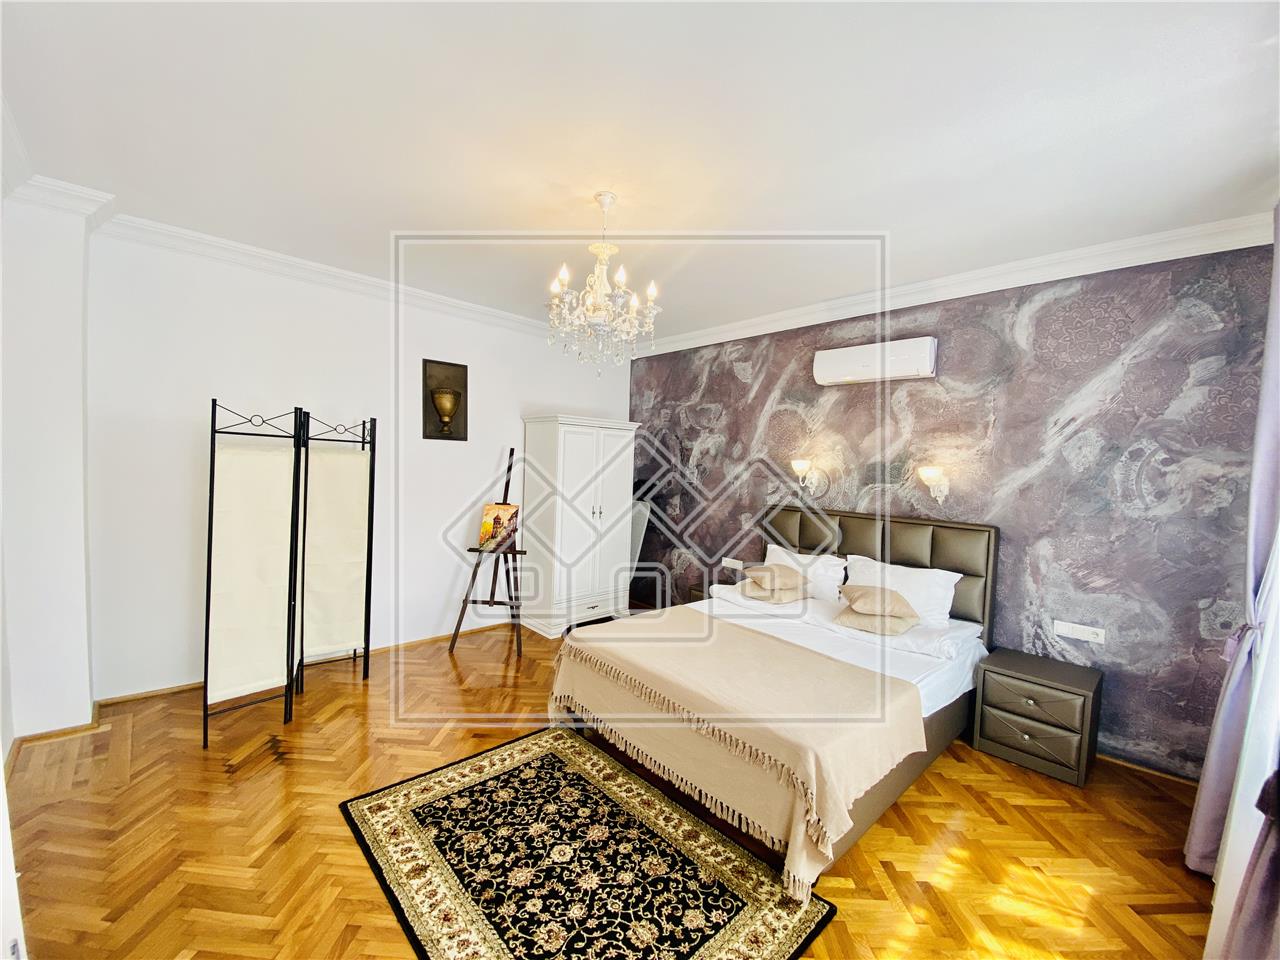 Apartament de vanzare in Sibiu - 118 mp utili - Pretabil investitii